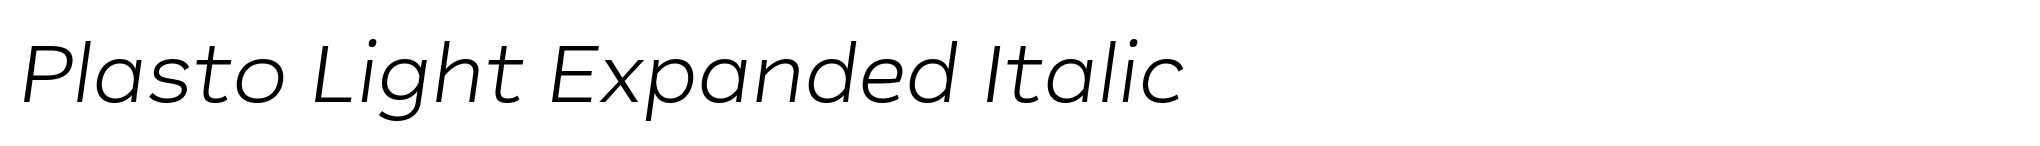 Plasto Light Expanded Italic image